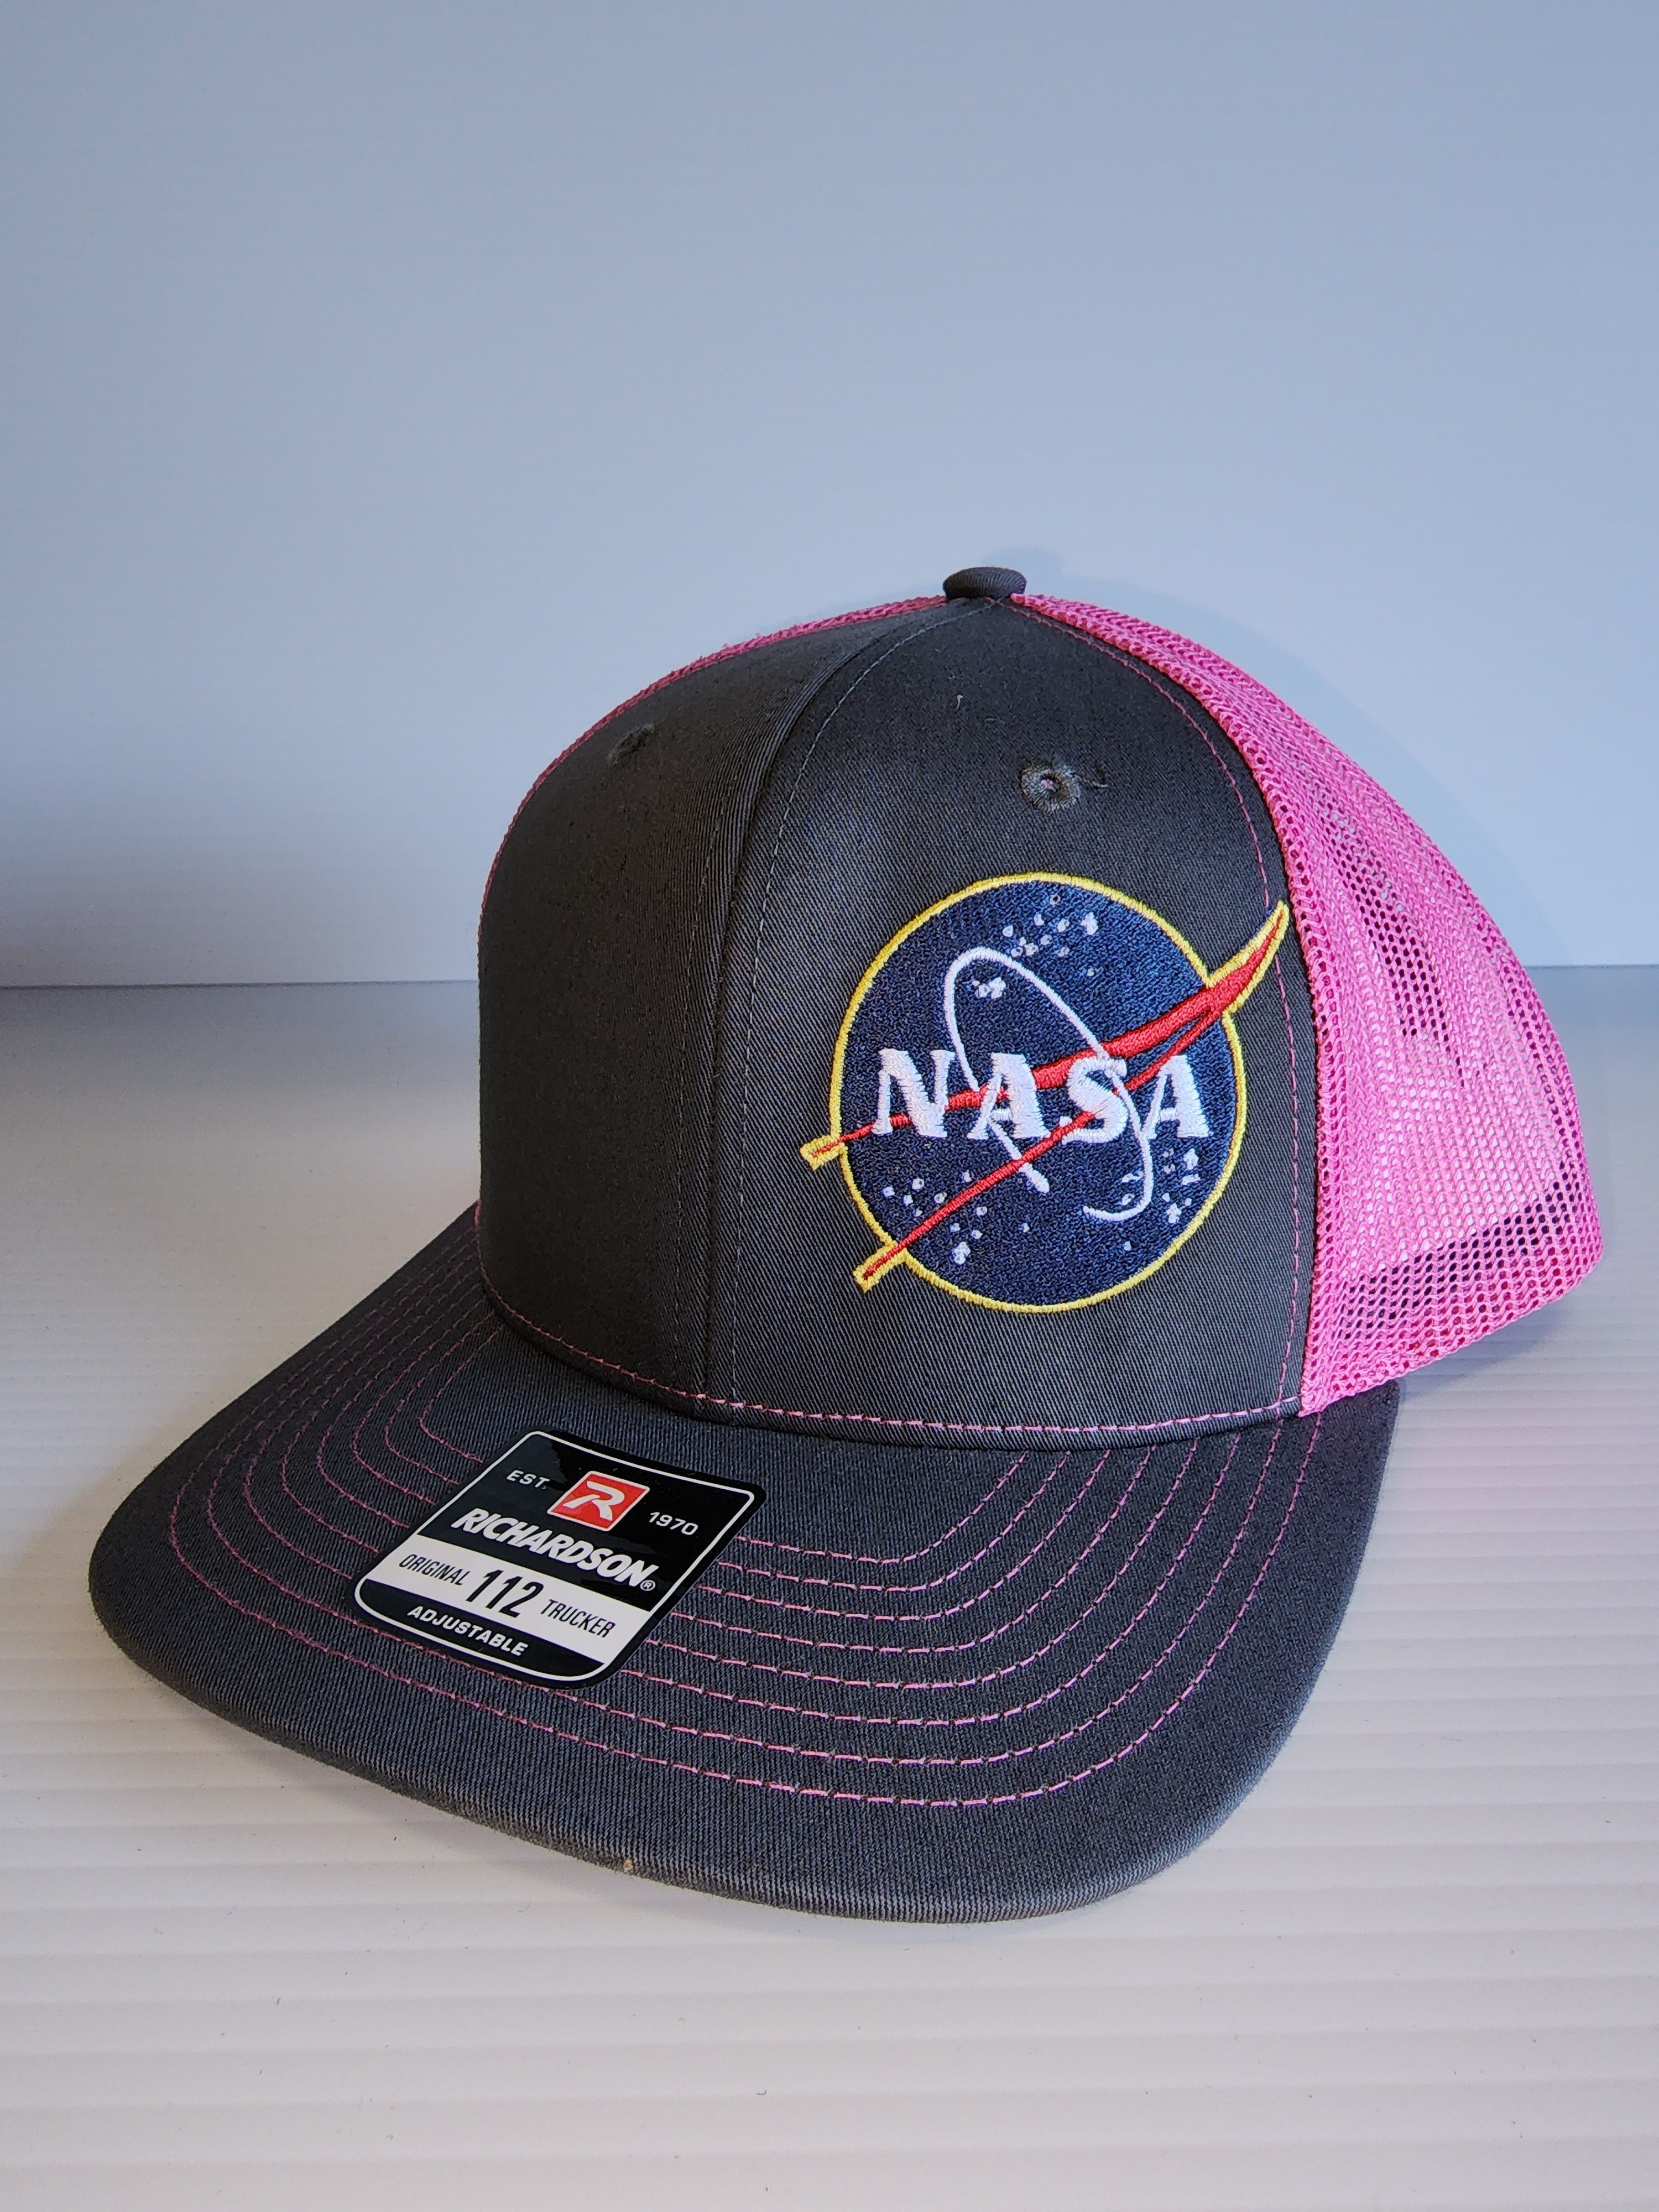 NASA Grey/Pink Trucker Cap